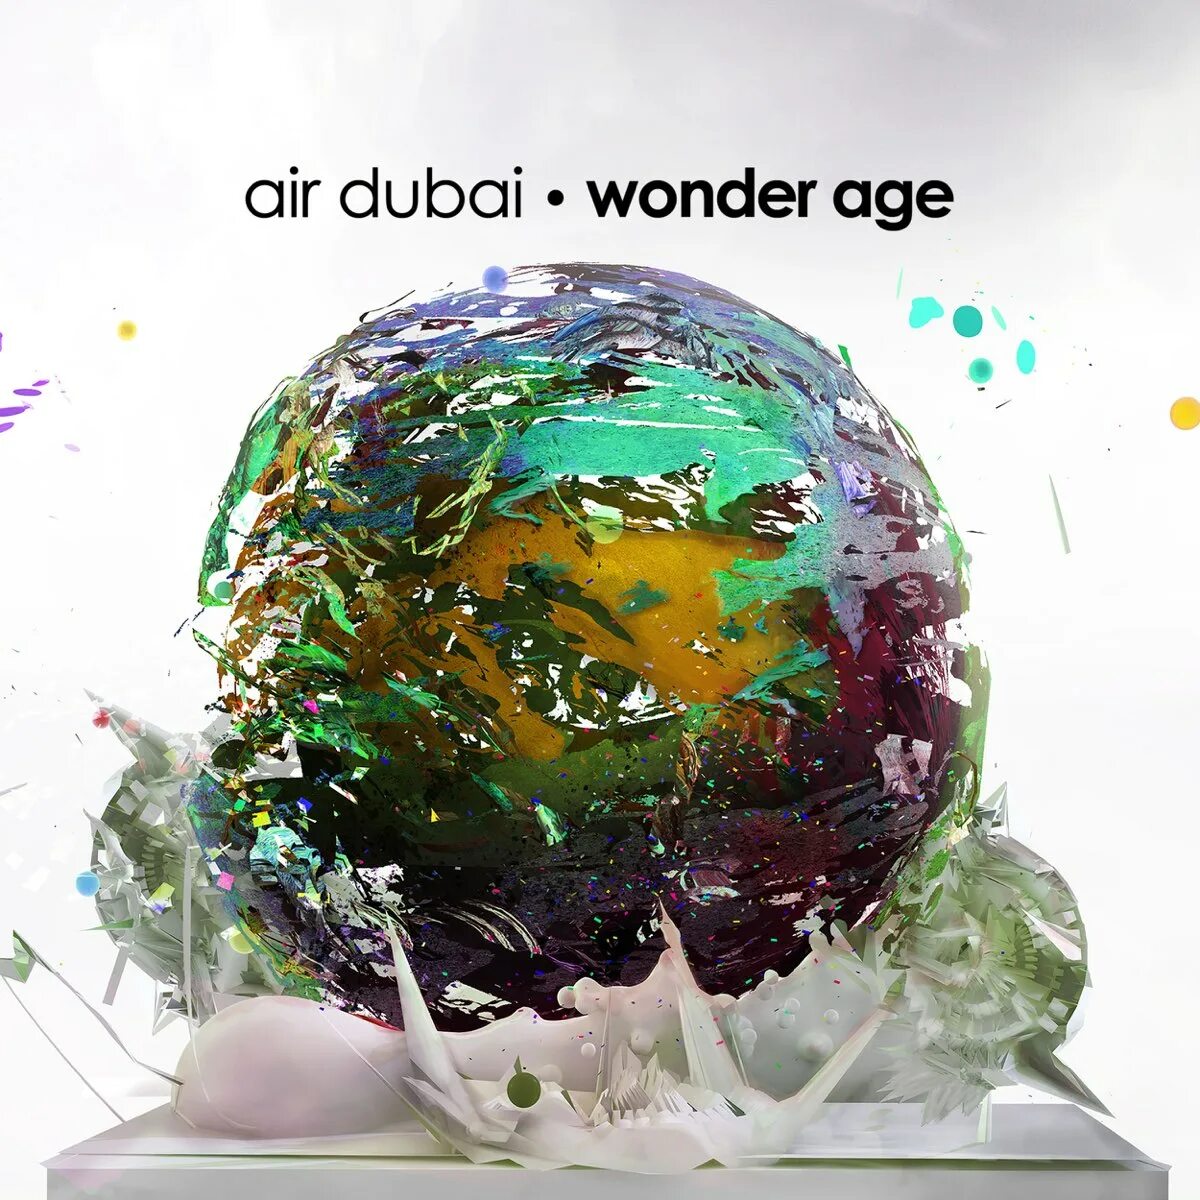 Dubai Air. Air wonder